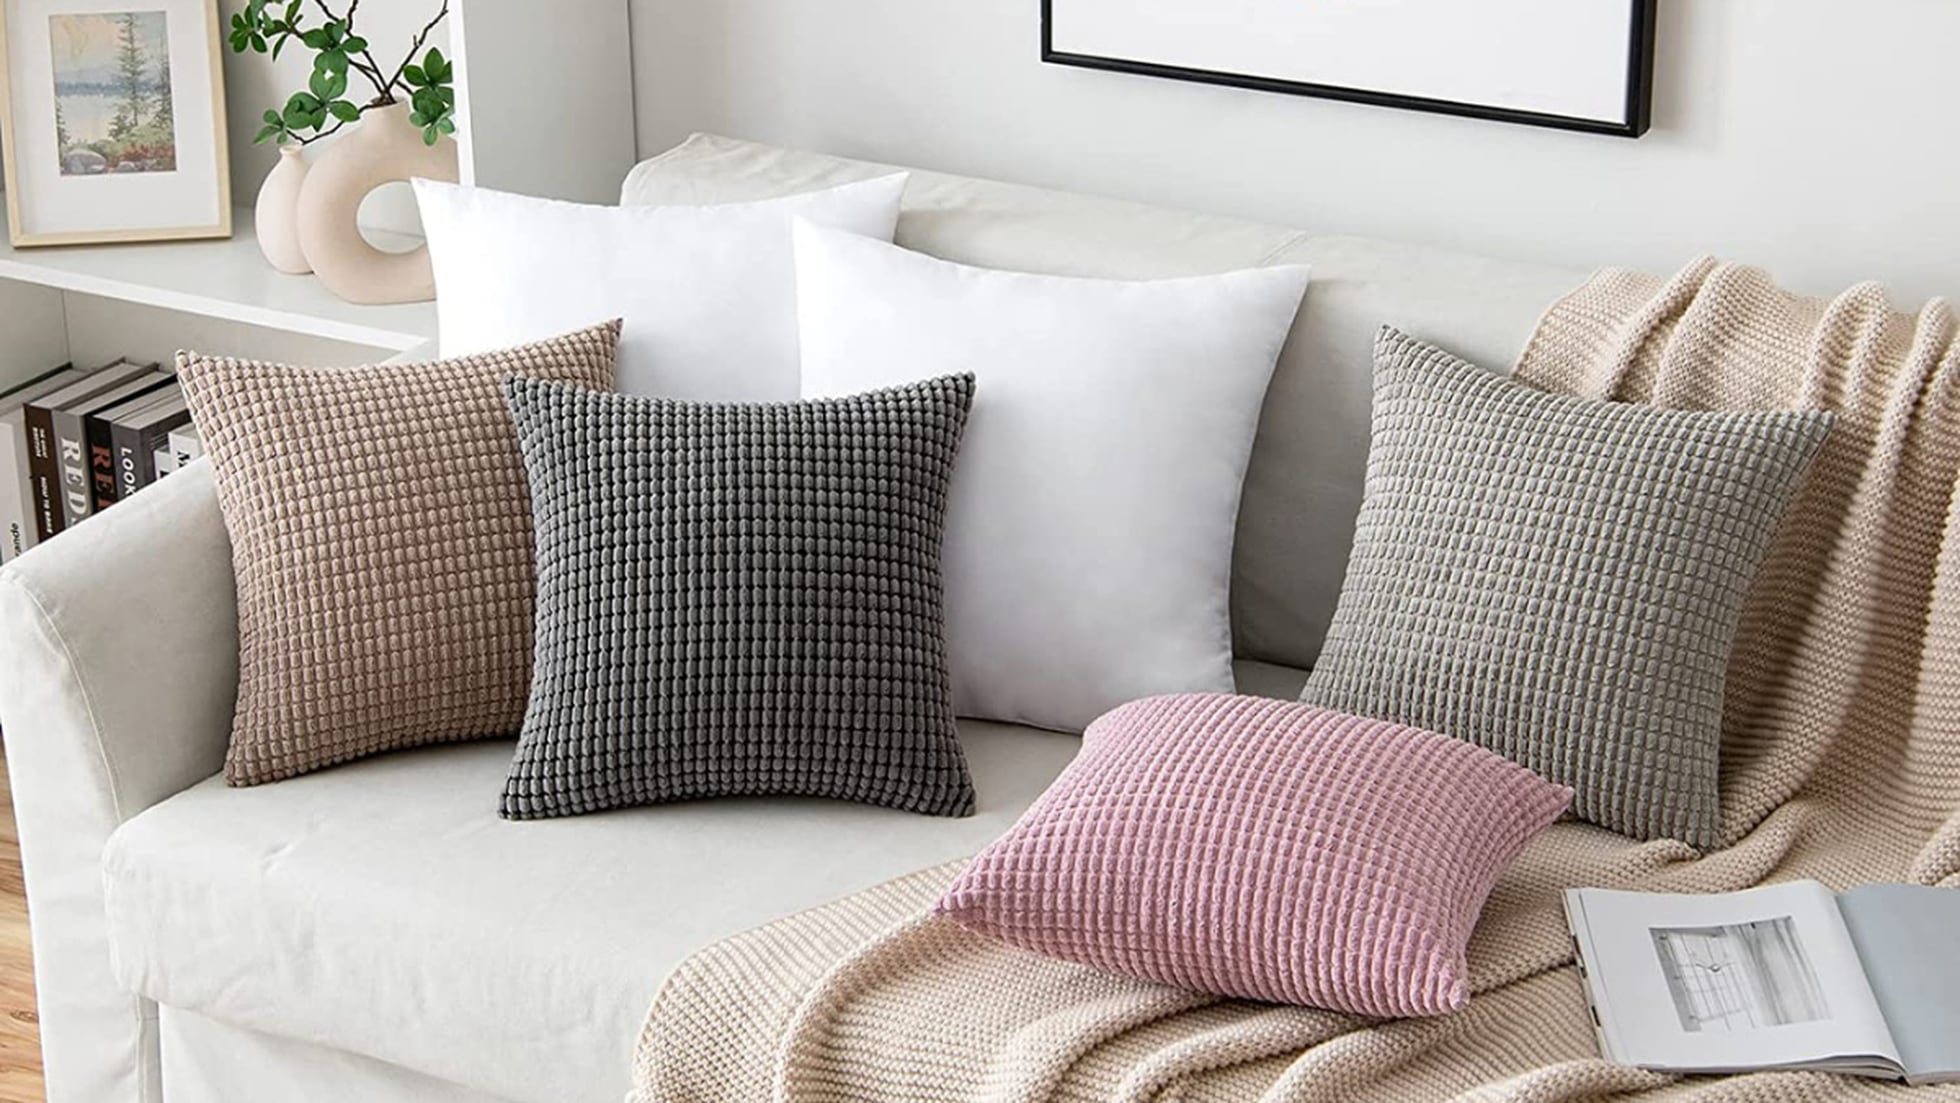 Estos cojines para el sofá con relleno incluido son perfectos para